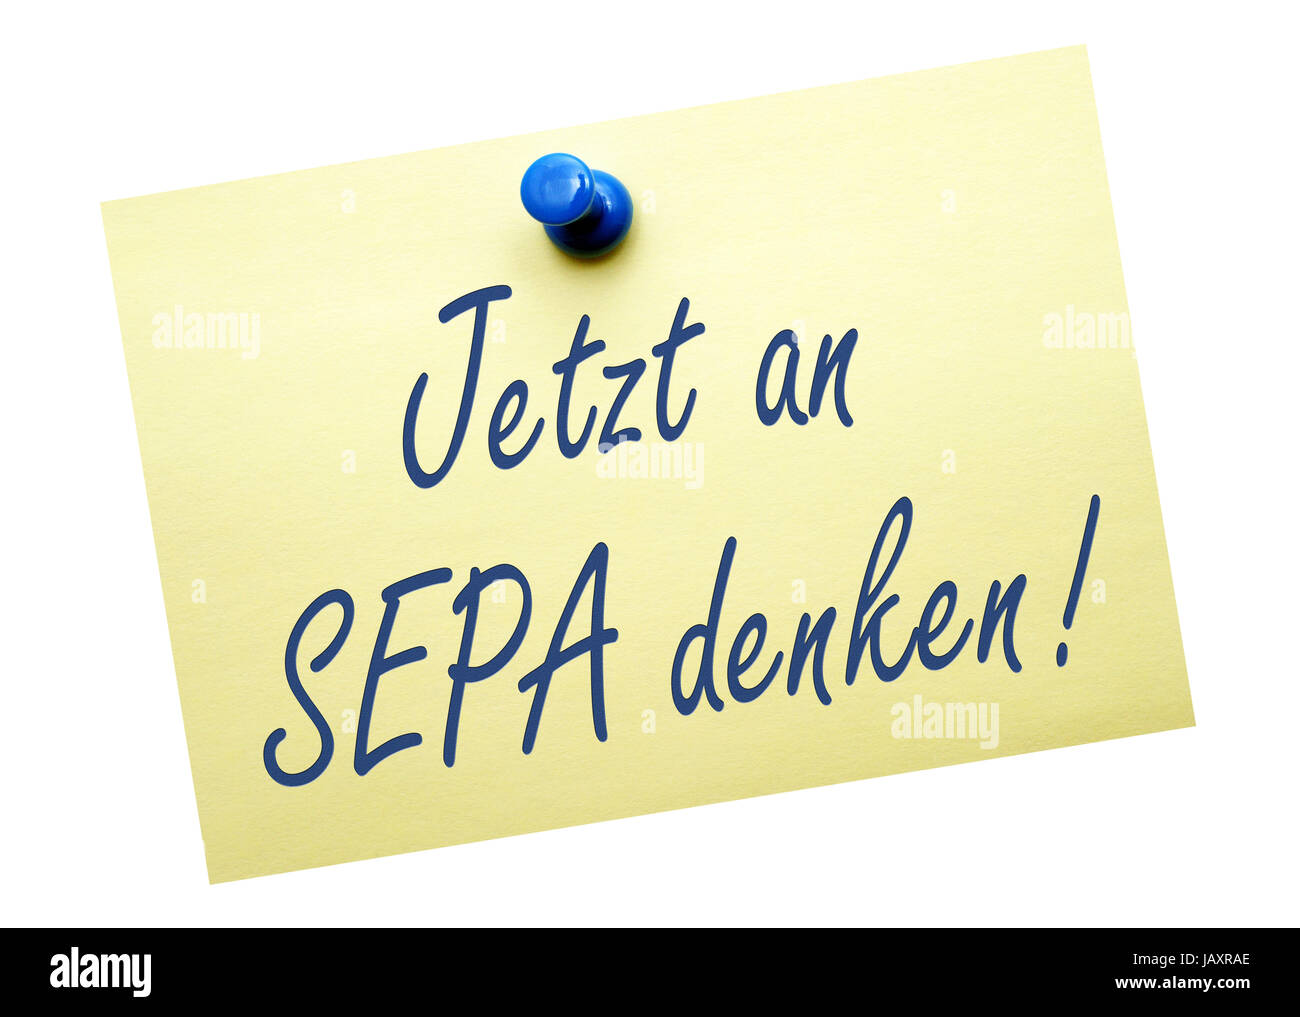 Jetzt an SEPA denken ! Stock Photo